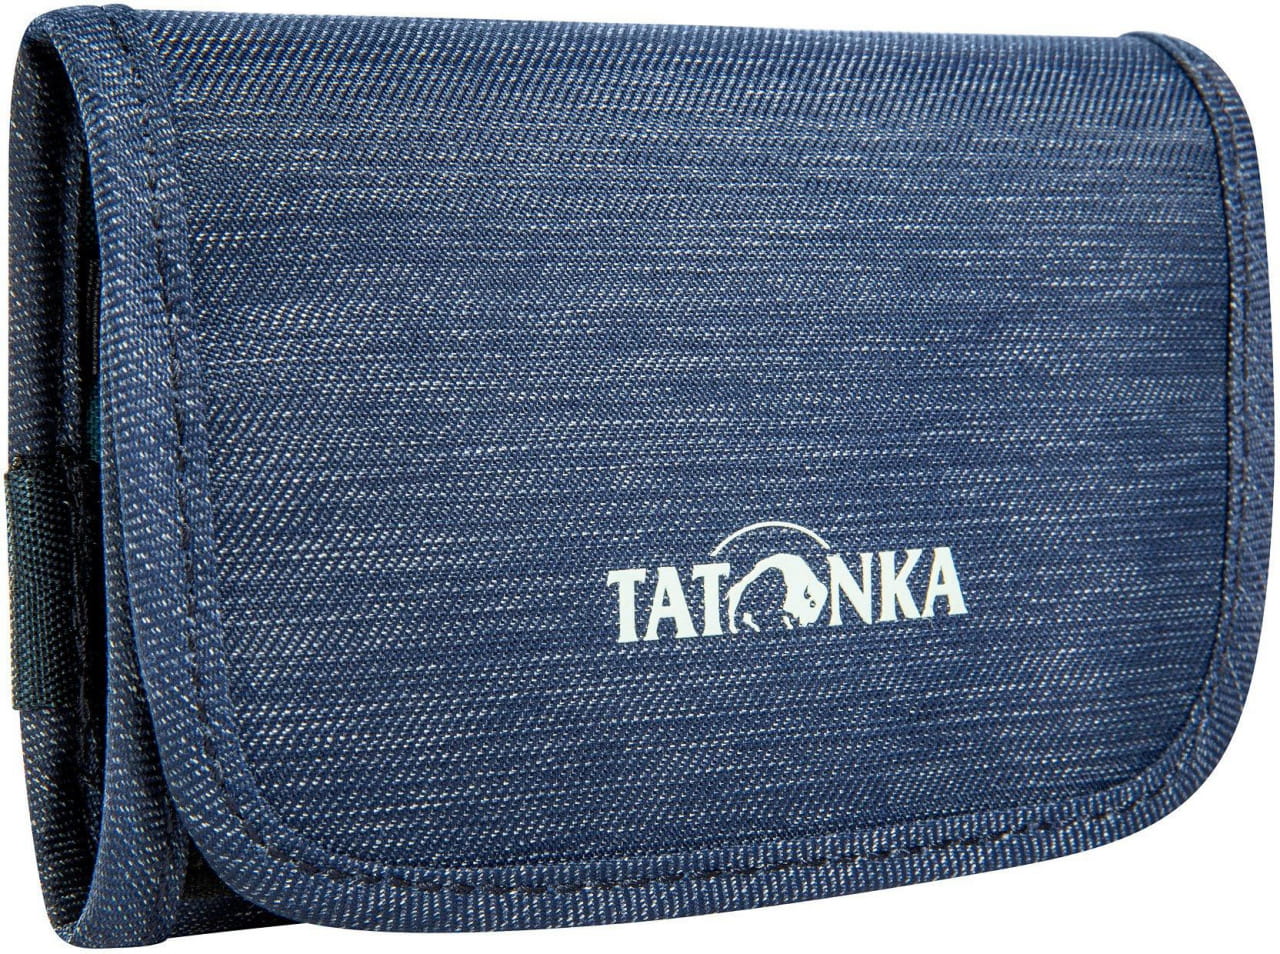 Portemonnaie für draußen  Tatonka Folder